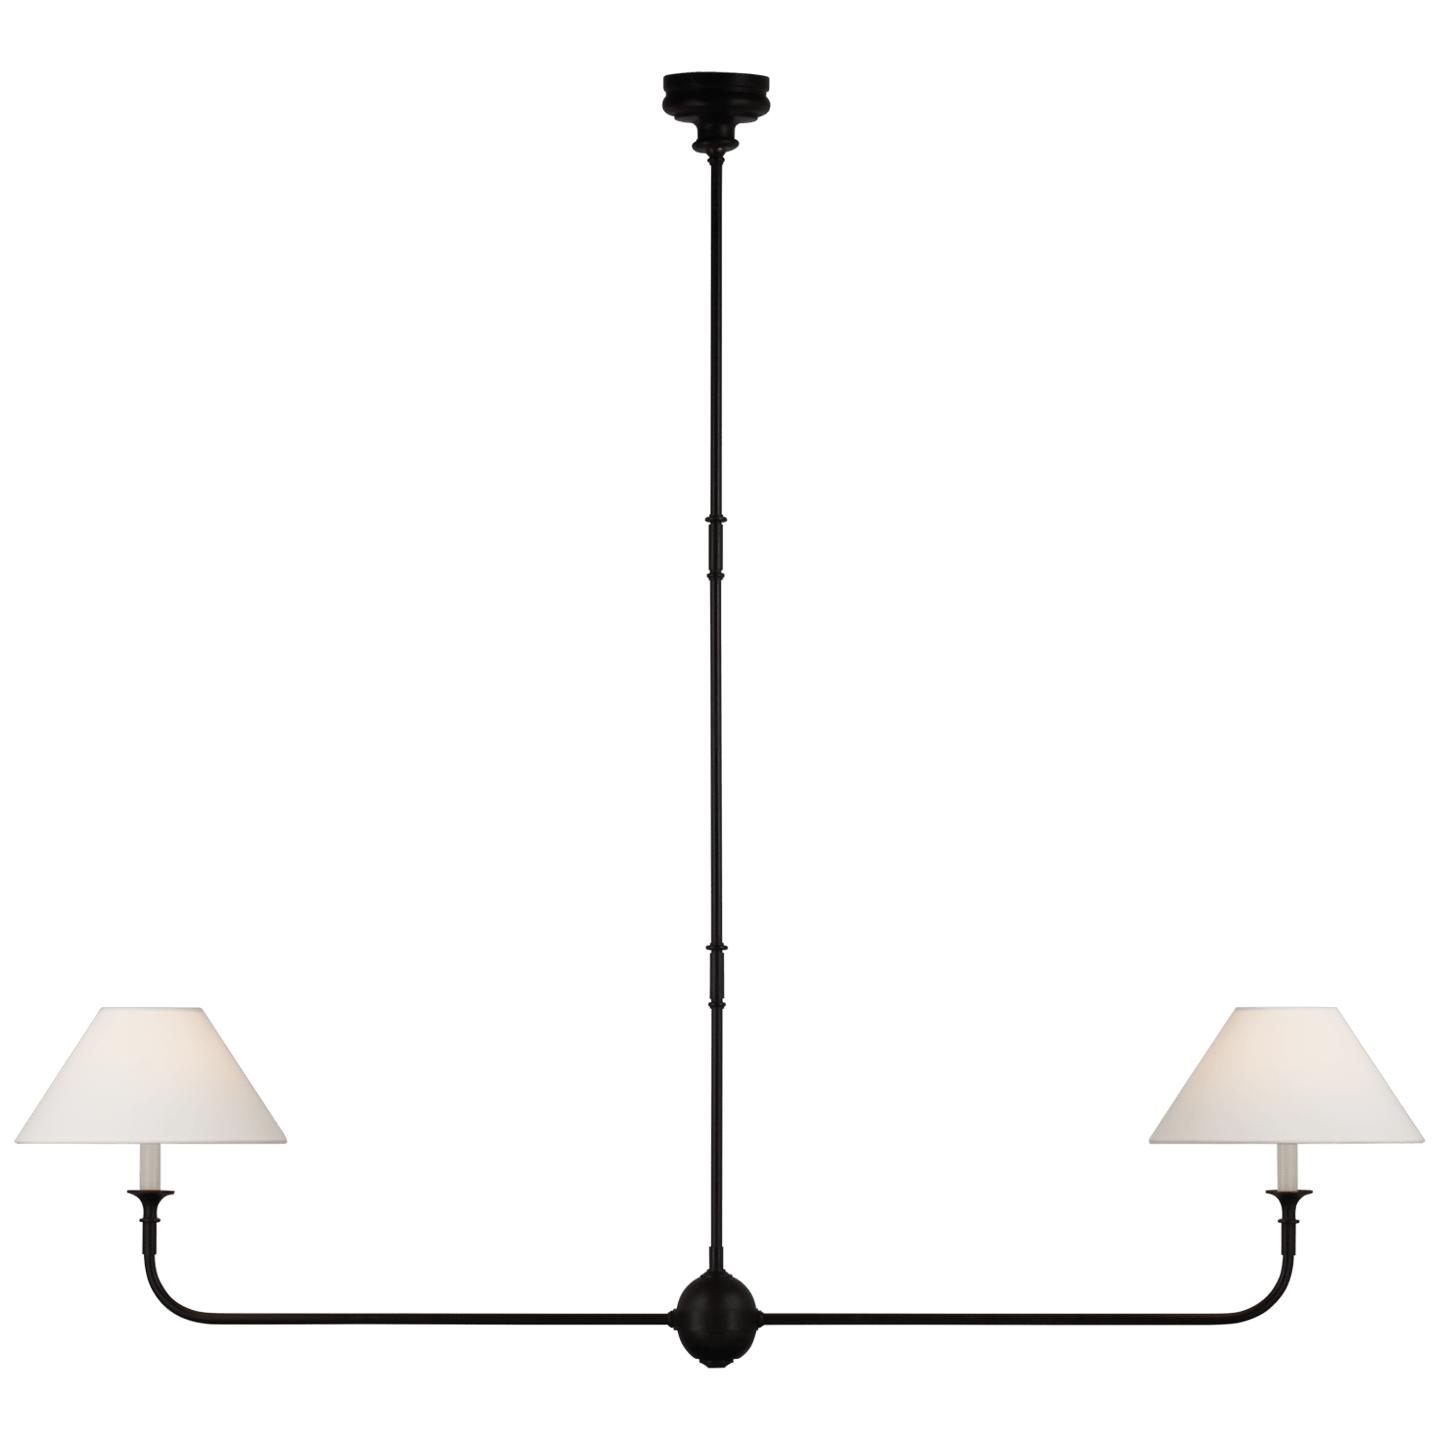 Купить Подвесной светильник Piaf Large Two Light Linear Pendant в интернет-магазине roooms.ru